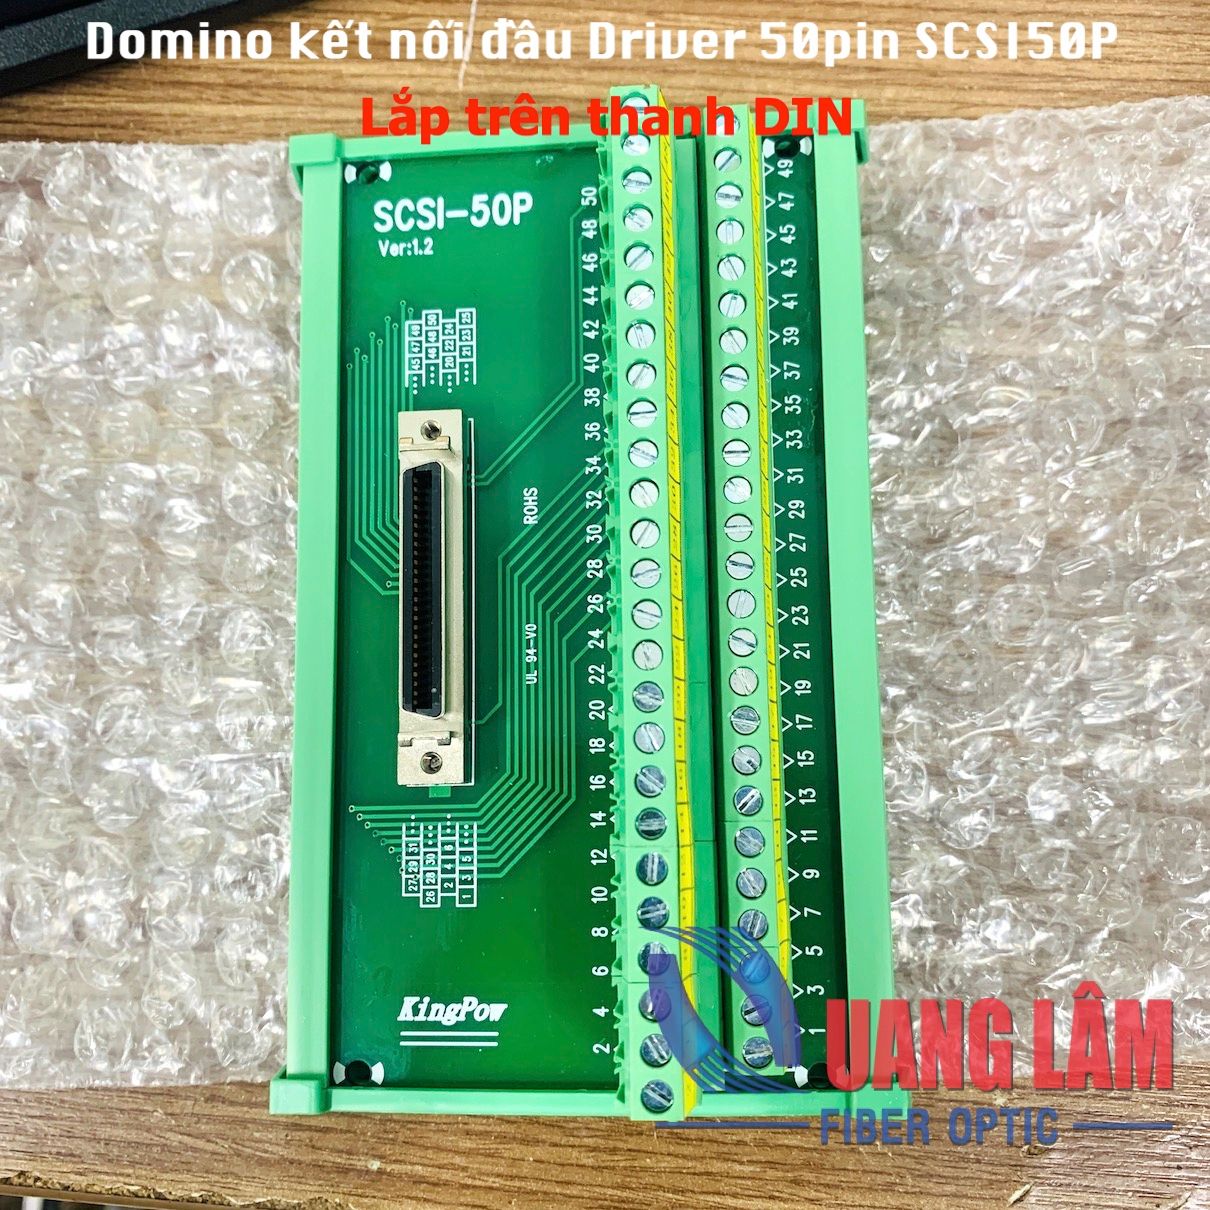 Board kết nối đầu Driver 50pin SCSI-50P - Lắp trên thanh DIN